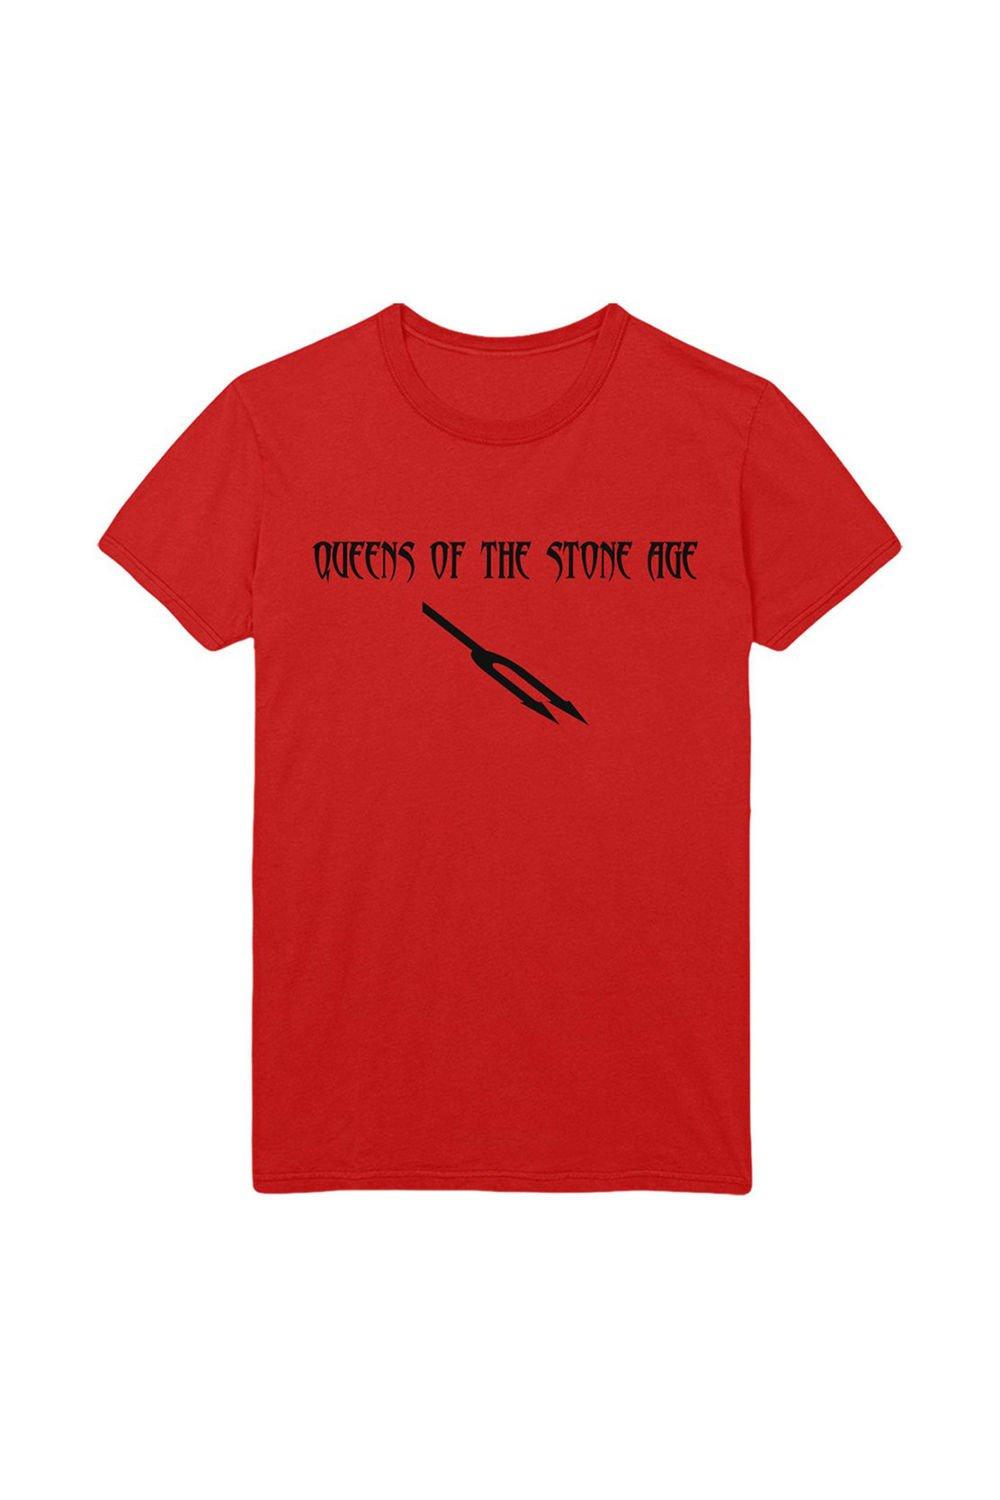 Хлопковая футболка Deaf Songs Queens Of The Stone Age, красный